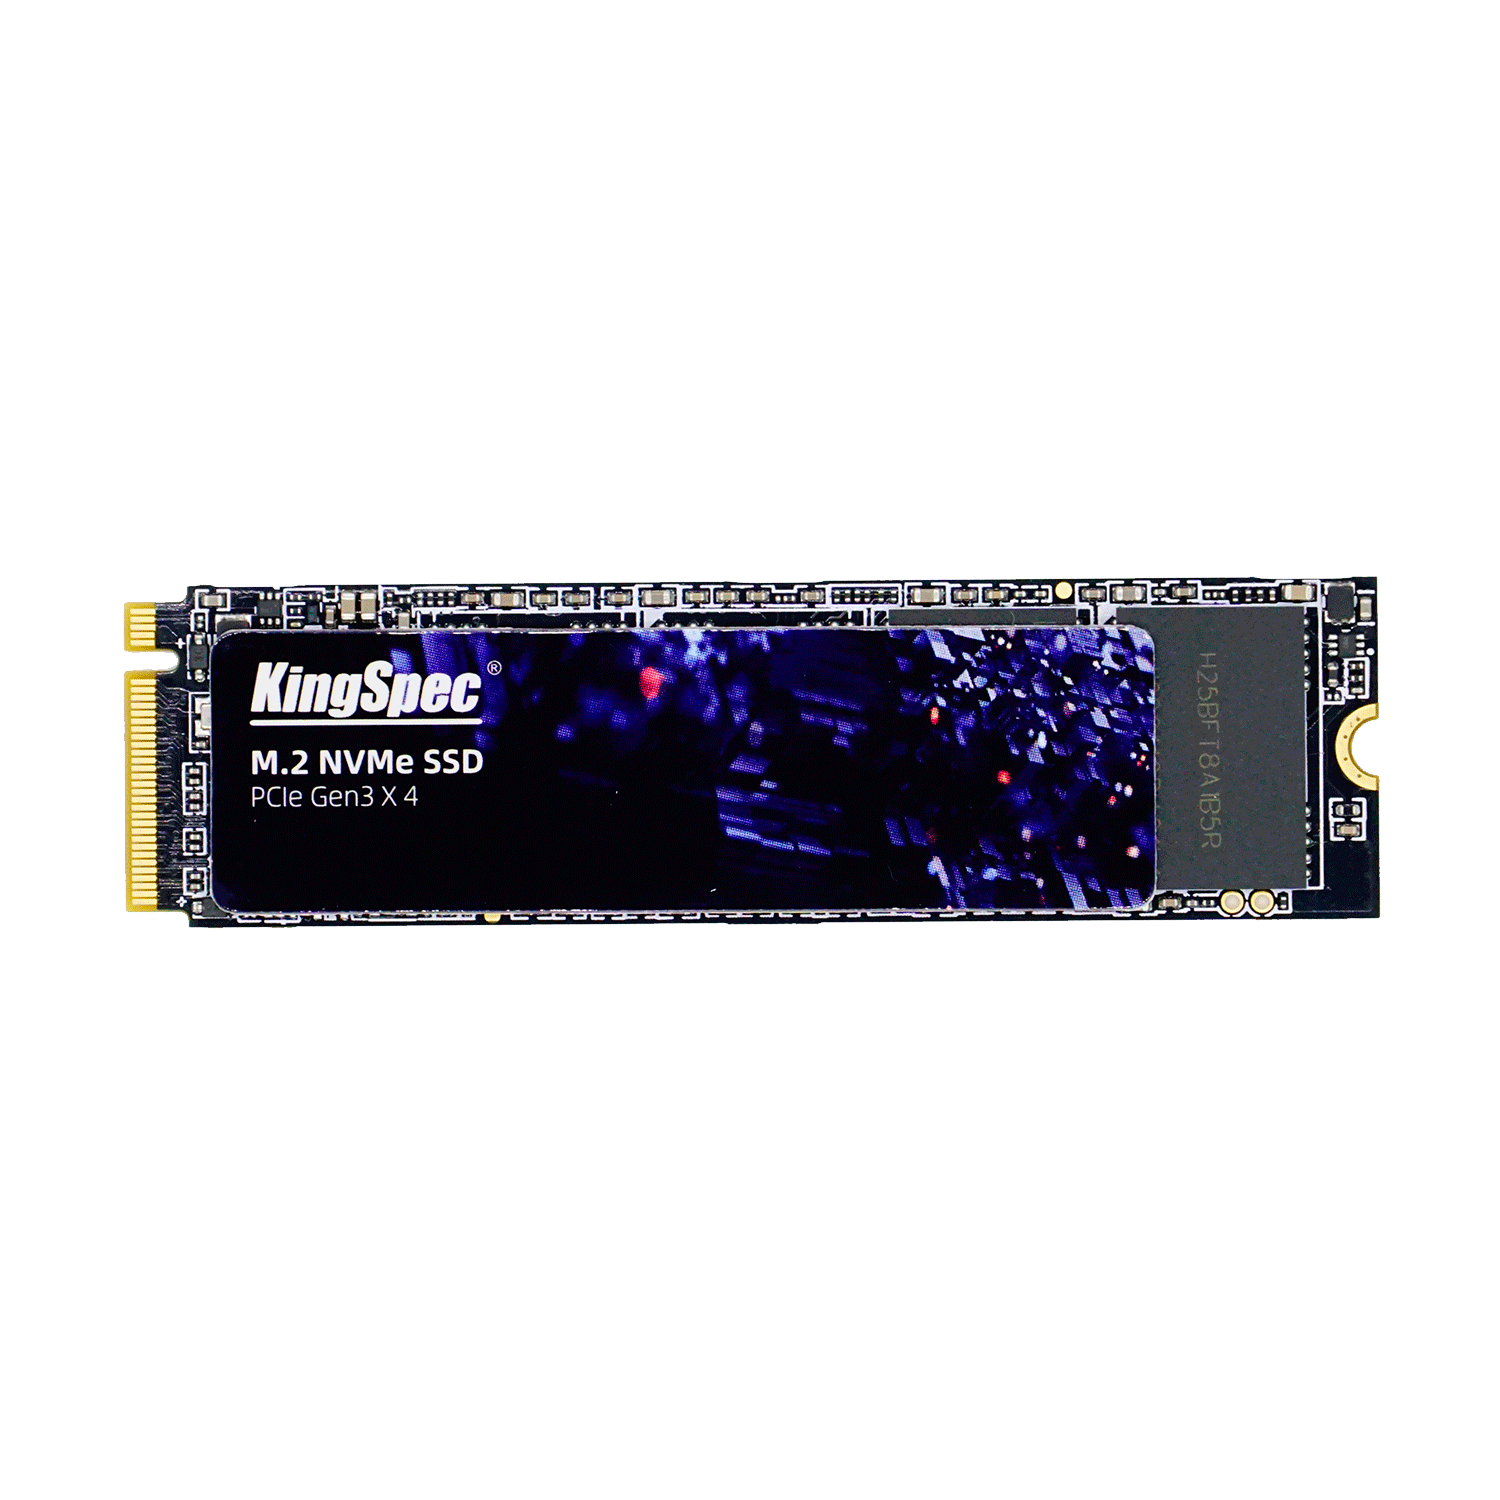 SSD M.2 KingSpec Yansen 128G NVMe PCIe Gen 3 - NE-128
